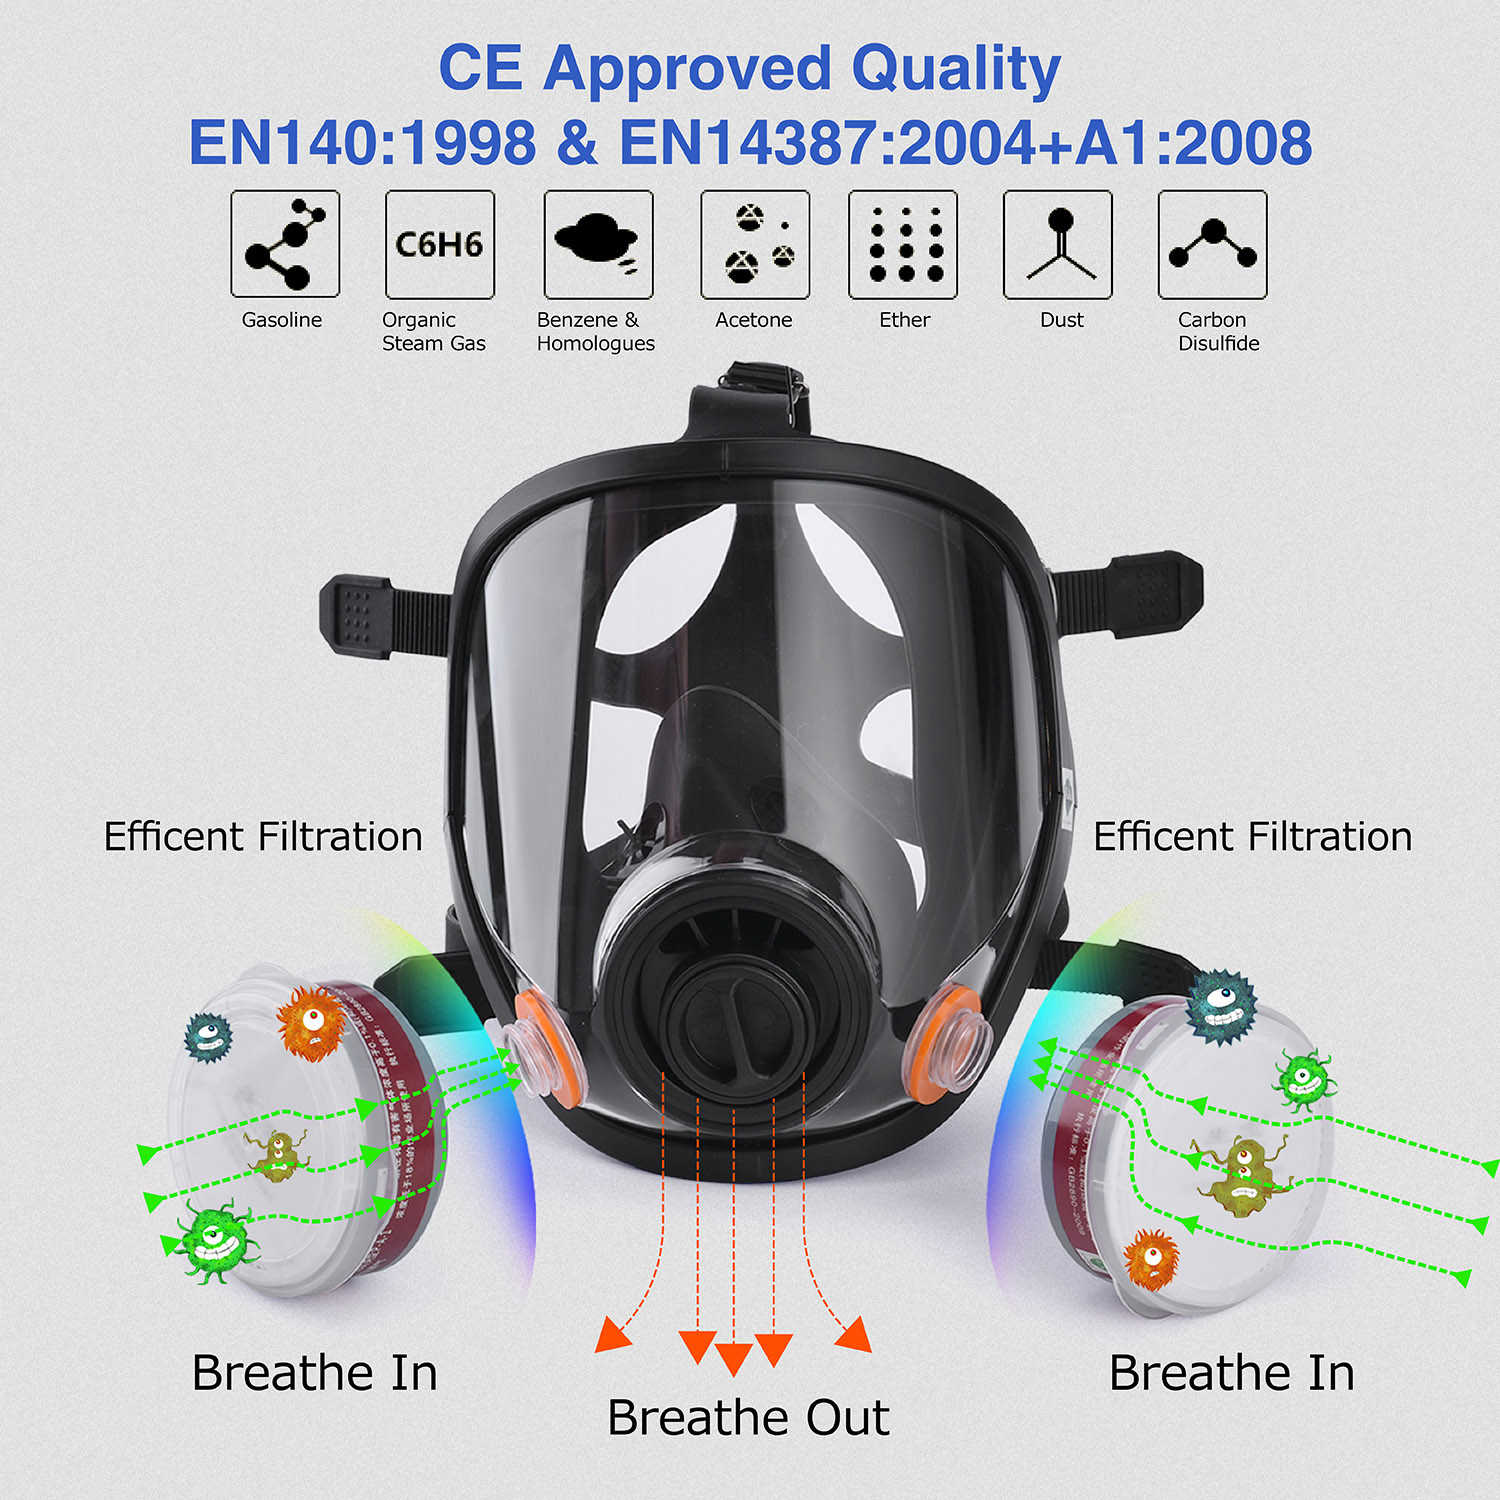 Respiratore a pieno facciale per operatori chimici GM8200